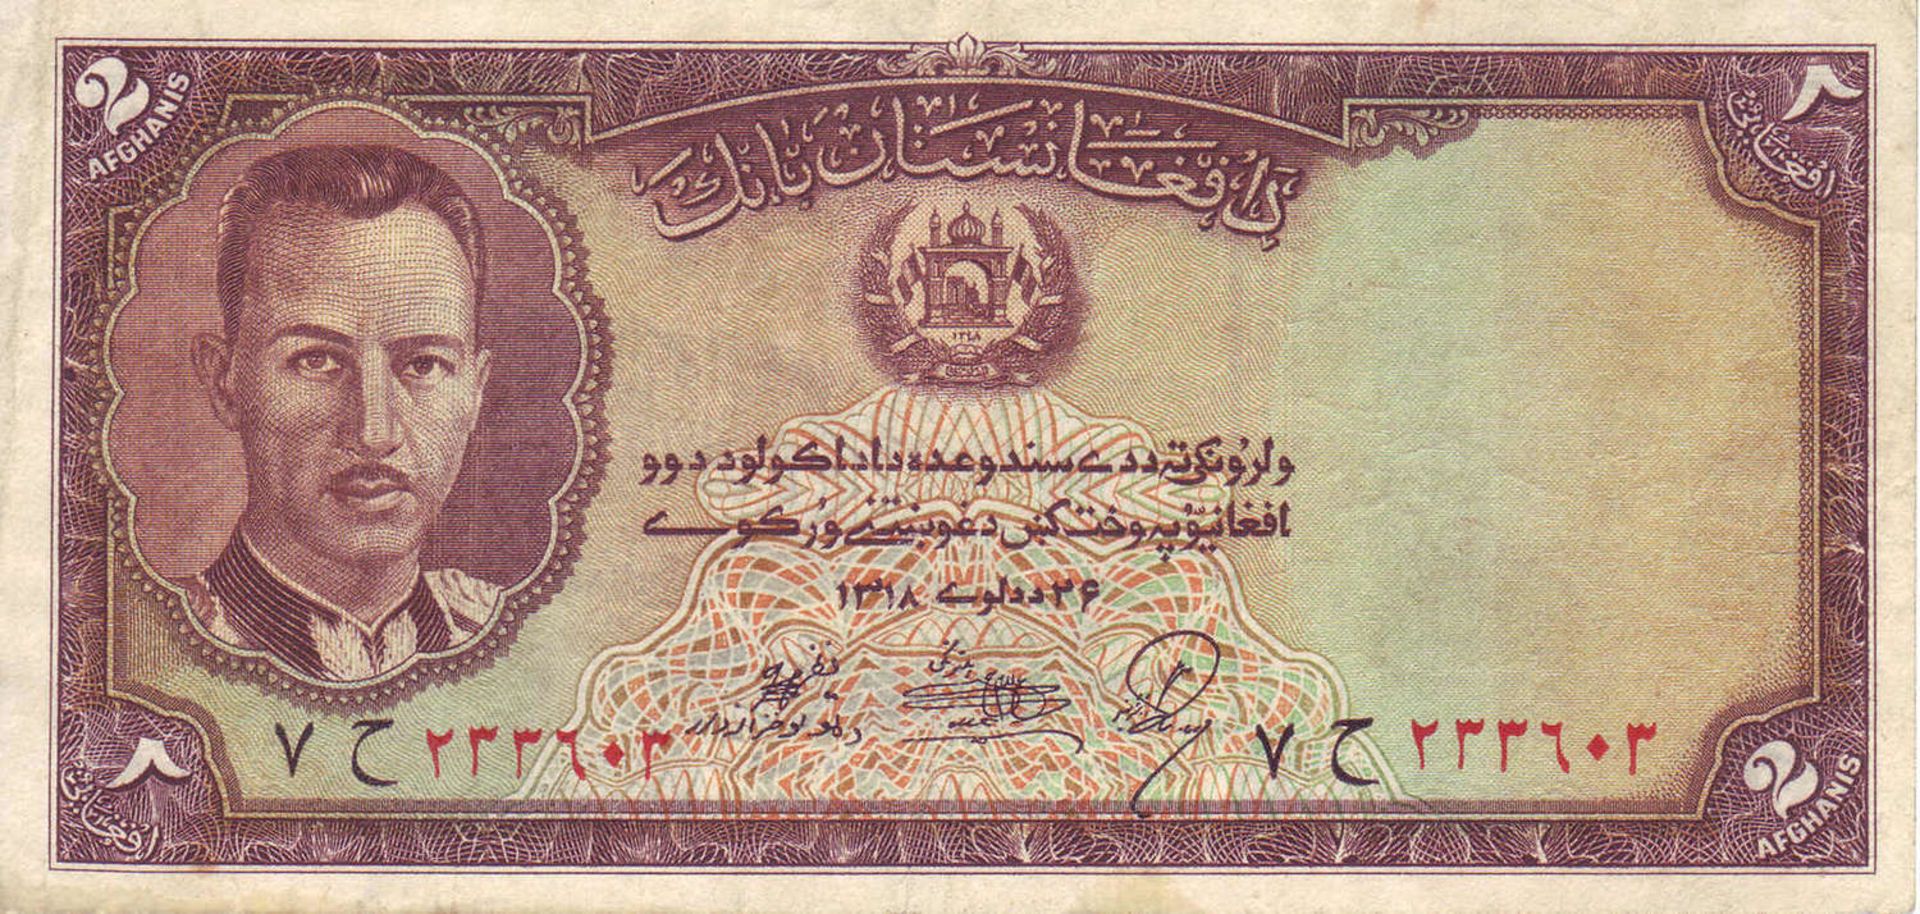 Afghanistan 1939, 2 Afghanis - Banknote, 1. Serie. P 21. SS.Afghanistan 1939, 2 Afghanis - Banknote,